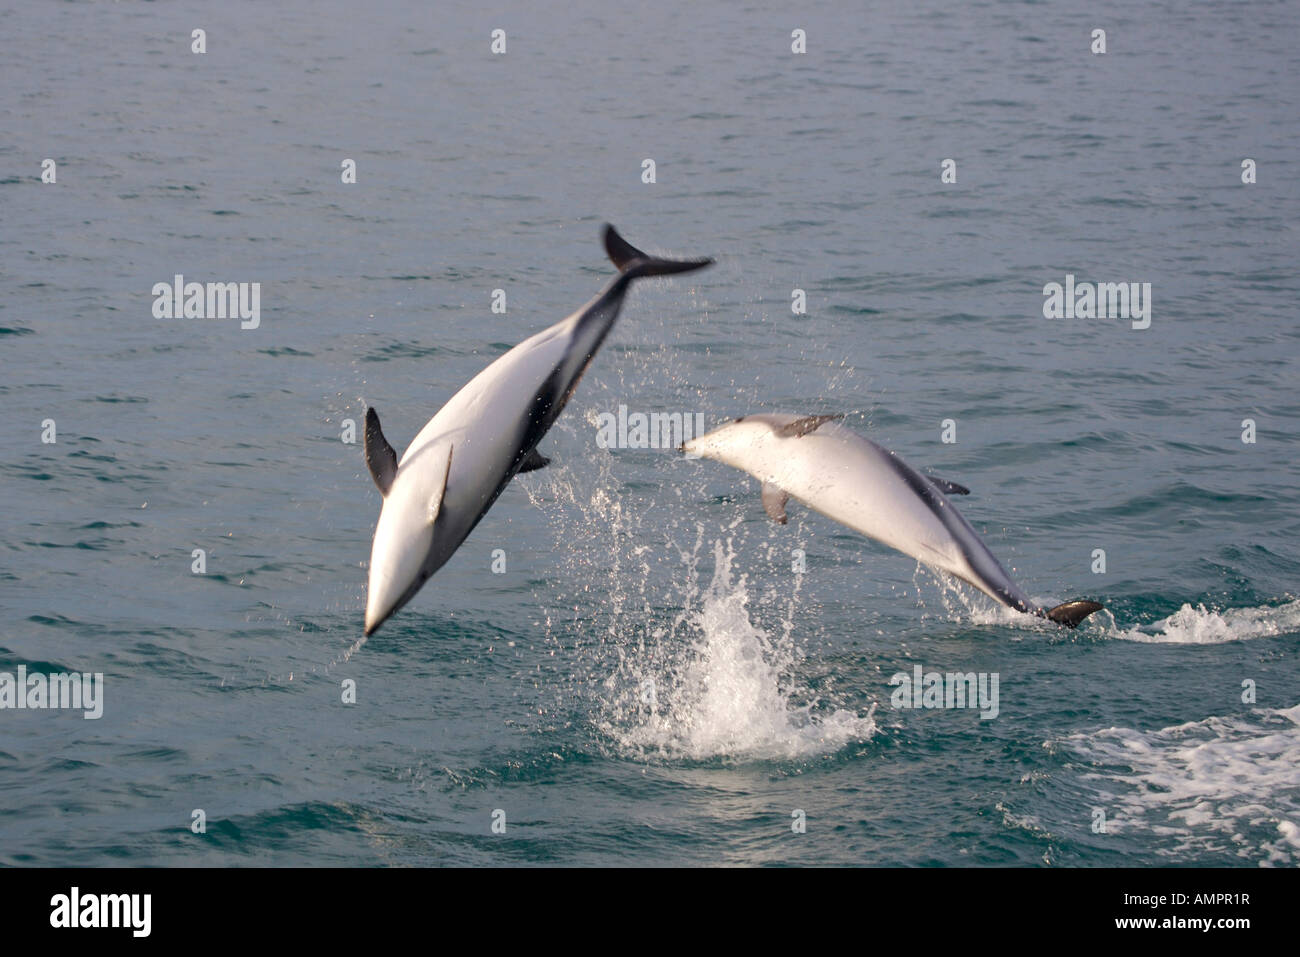 Les Dauphins au cours d'une visite d'observation des dauphins Kaikoura, Côte Est, île du Sud, Nouvelle-Zélande, Lagenorhynchus obscurus. Banque D'Images